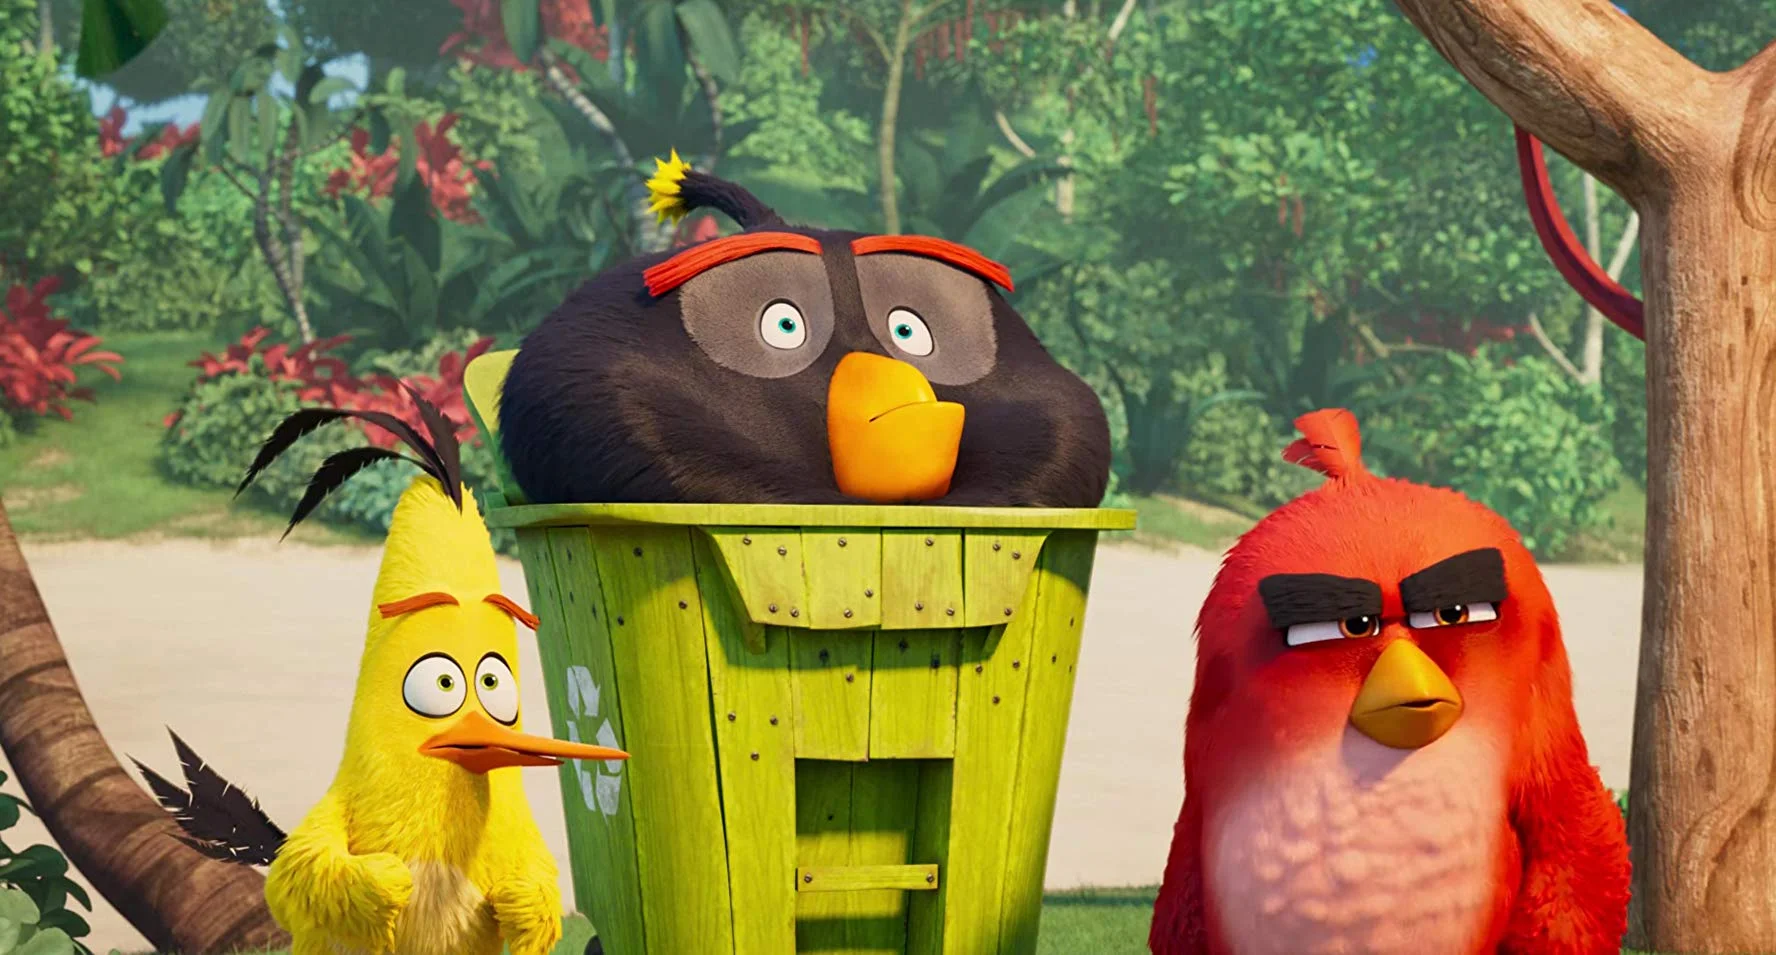 «Приятно глупый сиквел»: критики умеренно хвалят вторую часть мультфильма по Angry Birds - фото 3